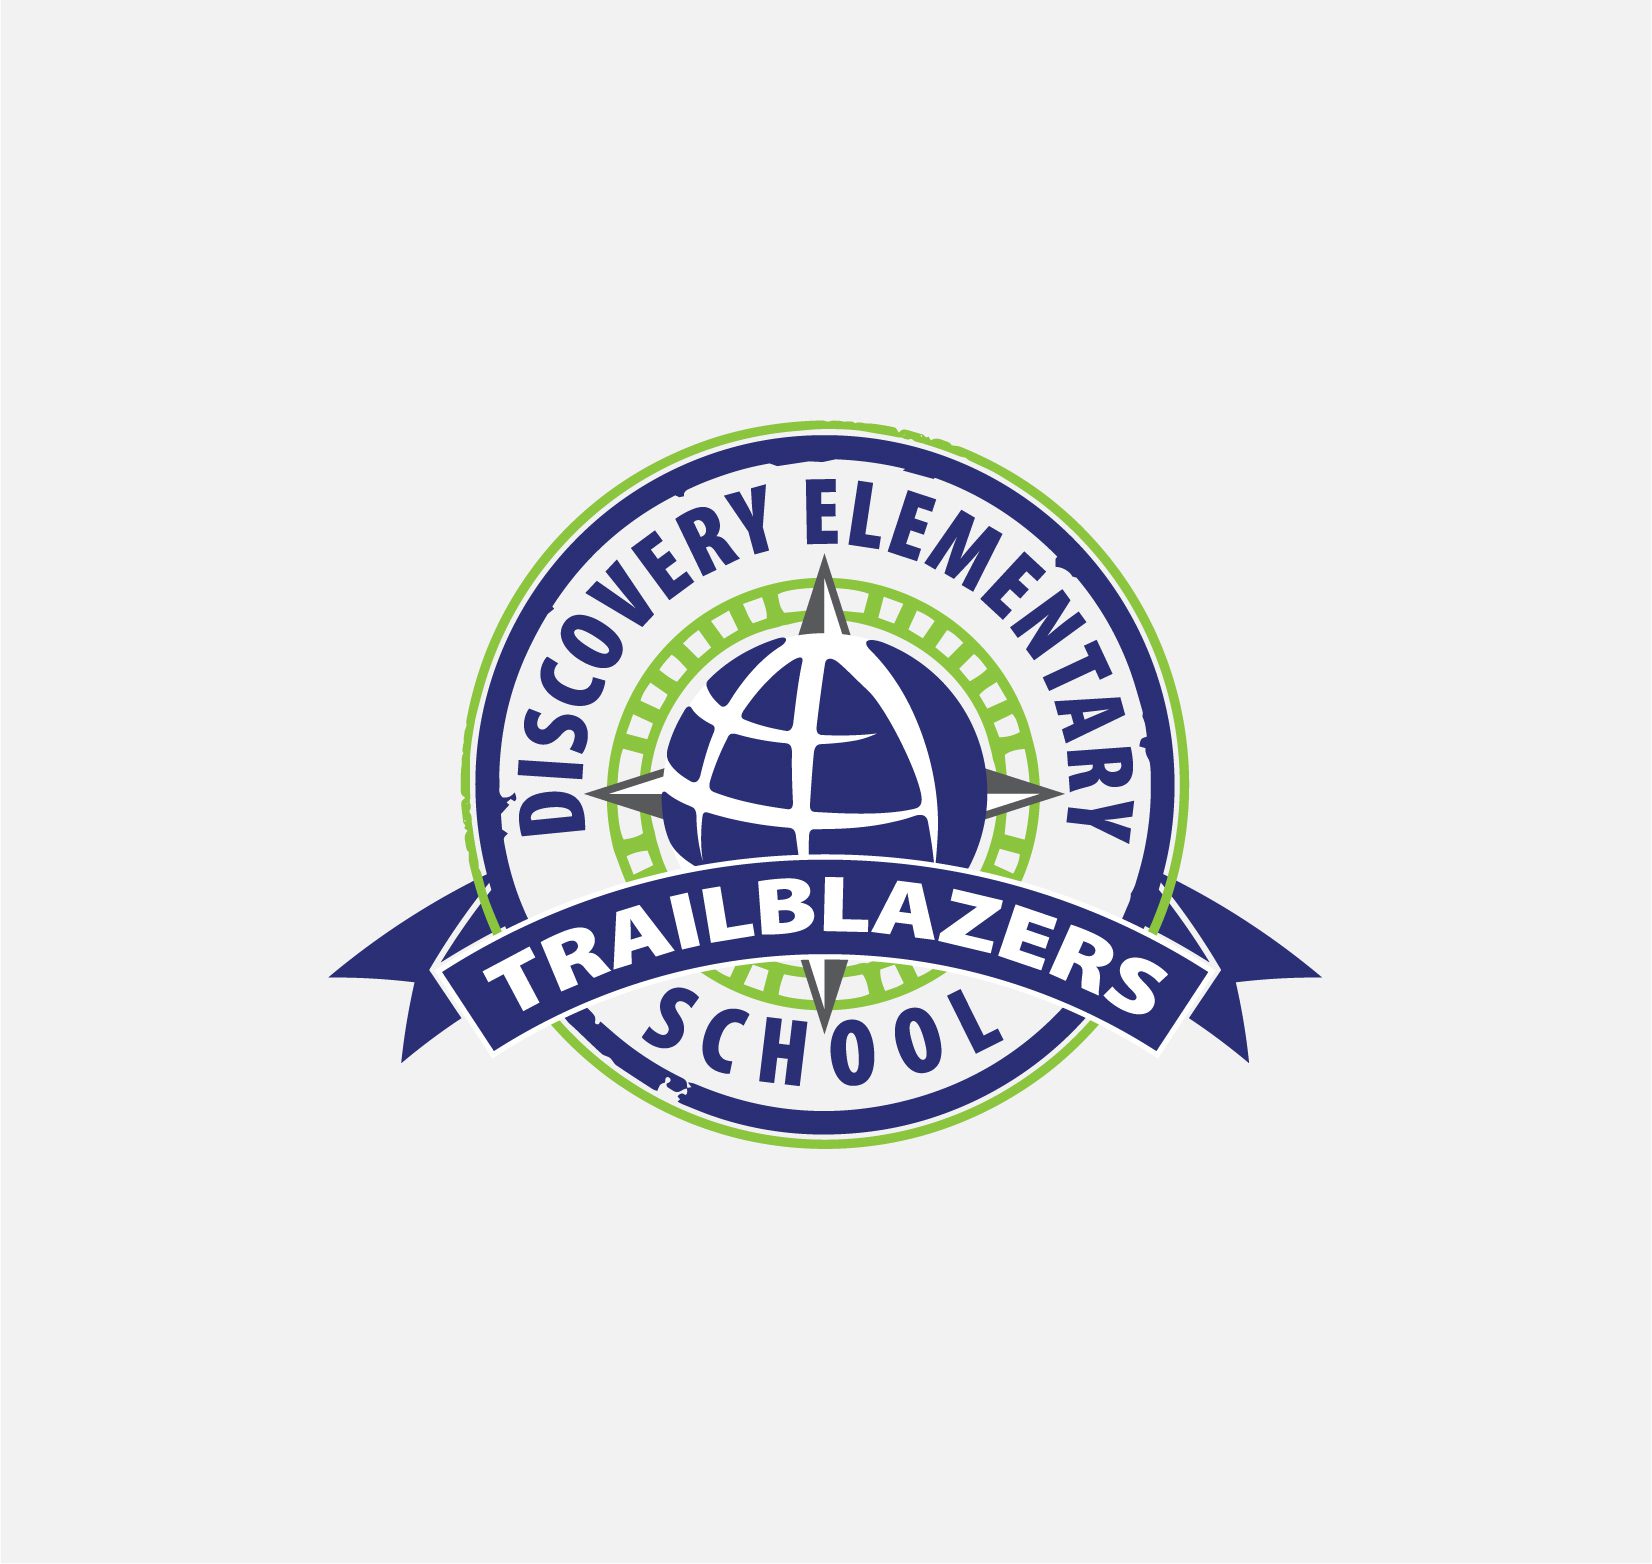 Discovery Elementary School Trailblazers logo